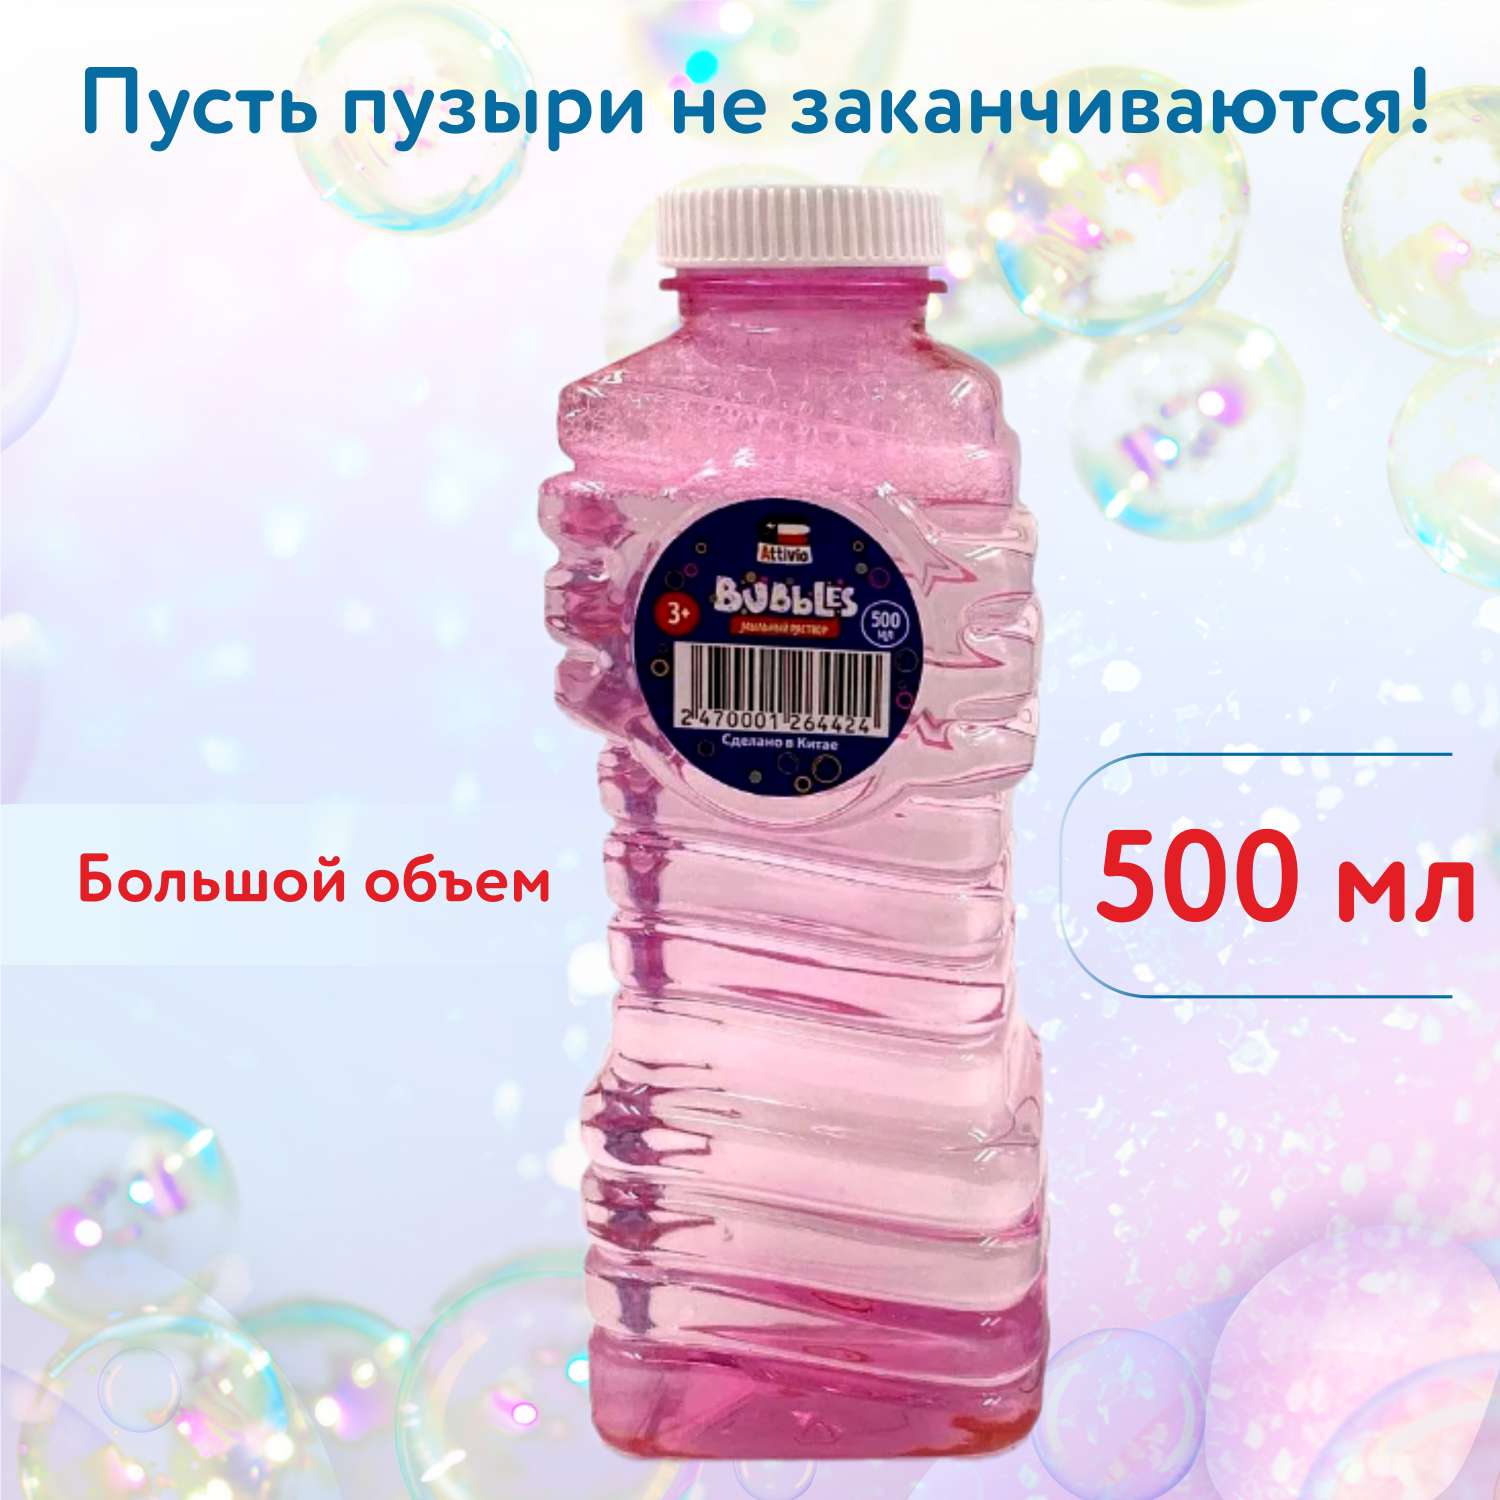 Жидкость для мыльных пузырей Attivio 500мл в ассортименте 507 - фото 2